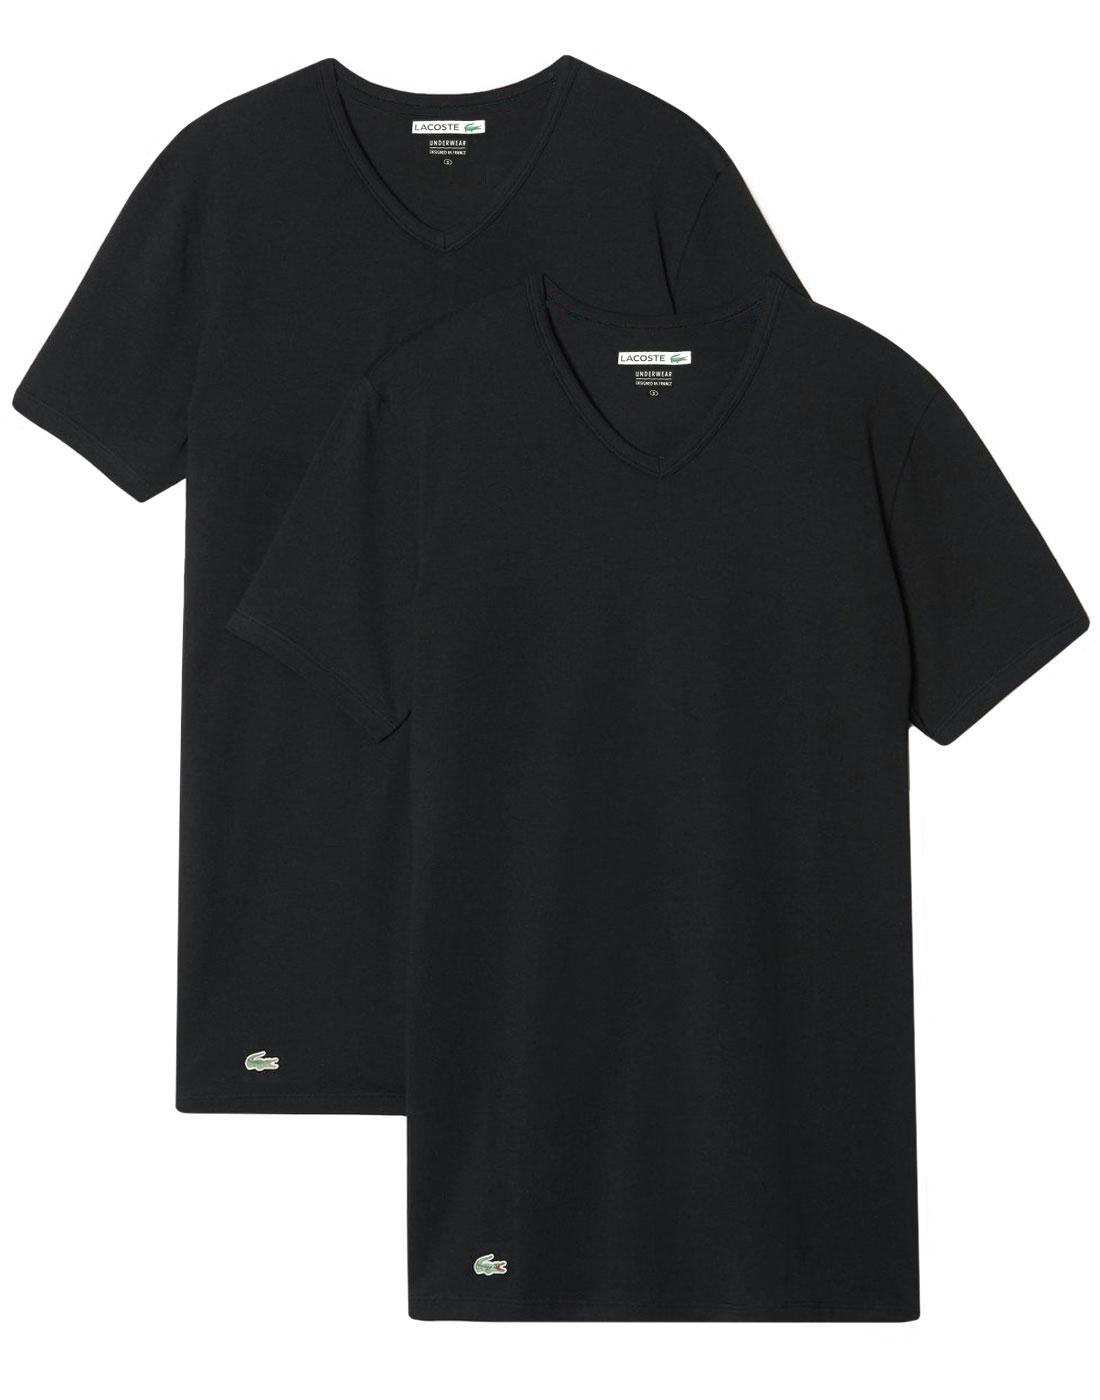 LACOSTE Men's Retro 2 Pack V-Neck T-Shirt - BLACK